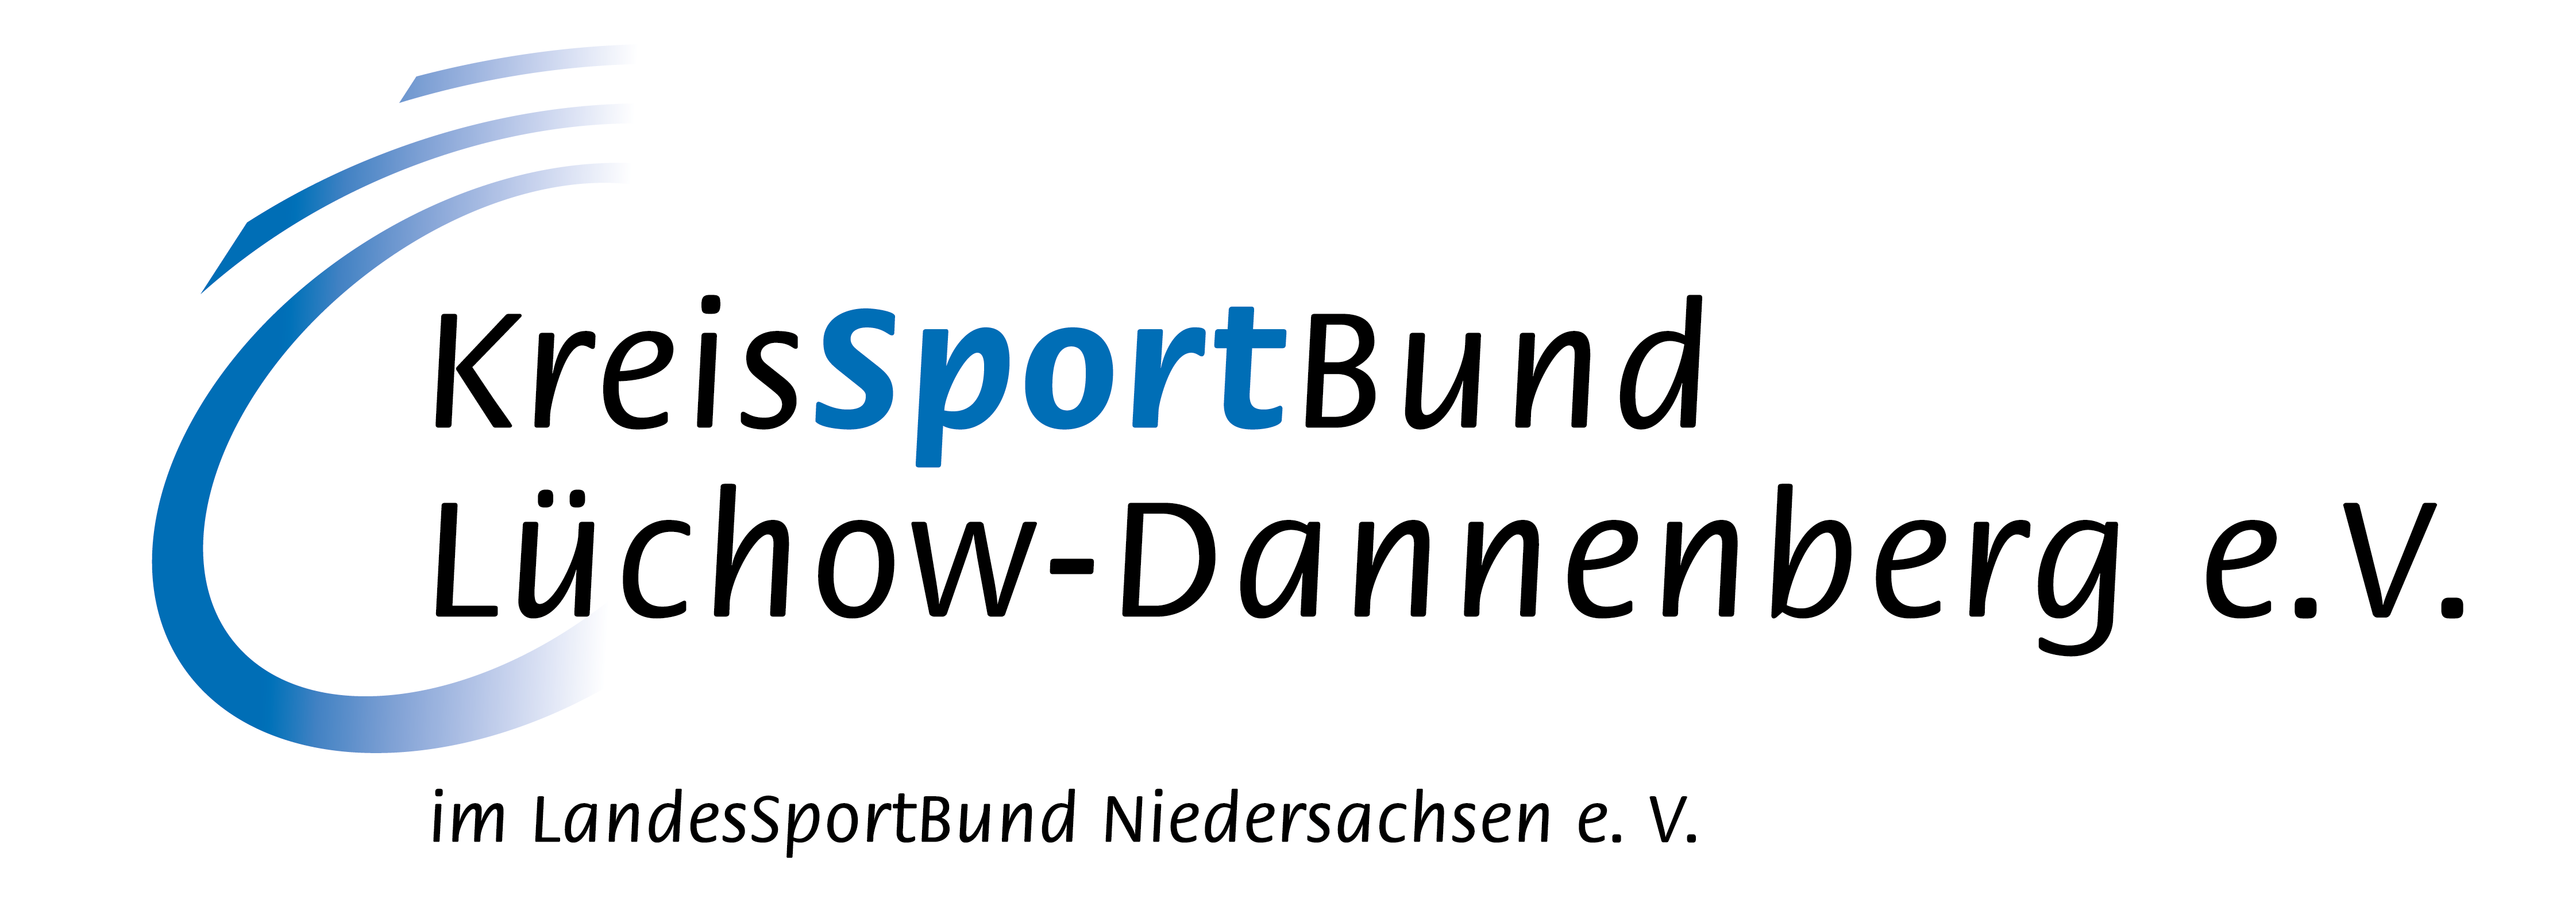 KreisSportBund Lüchow-Dannenberg